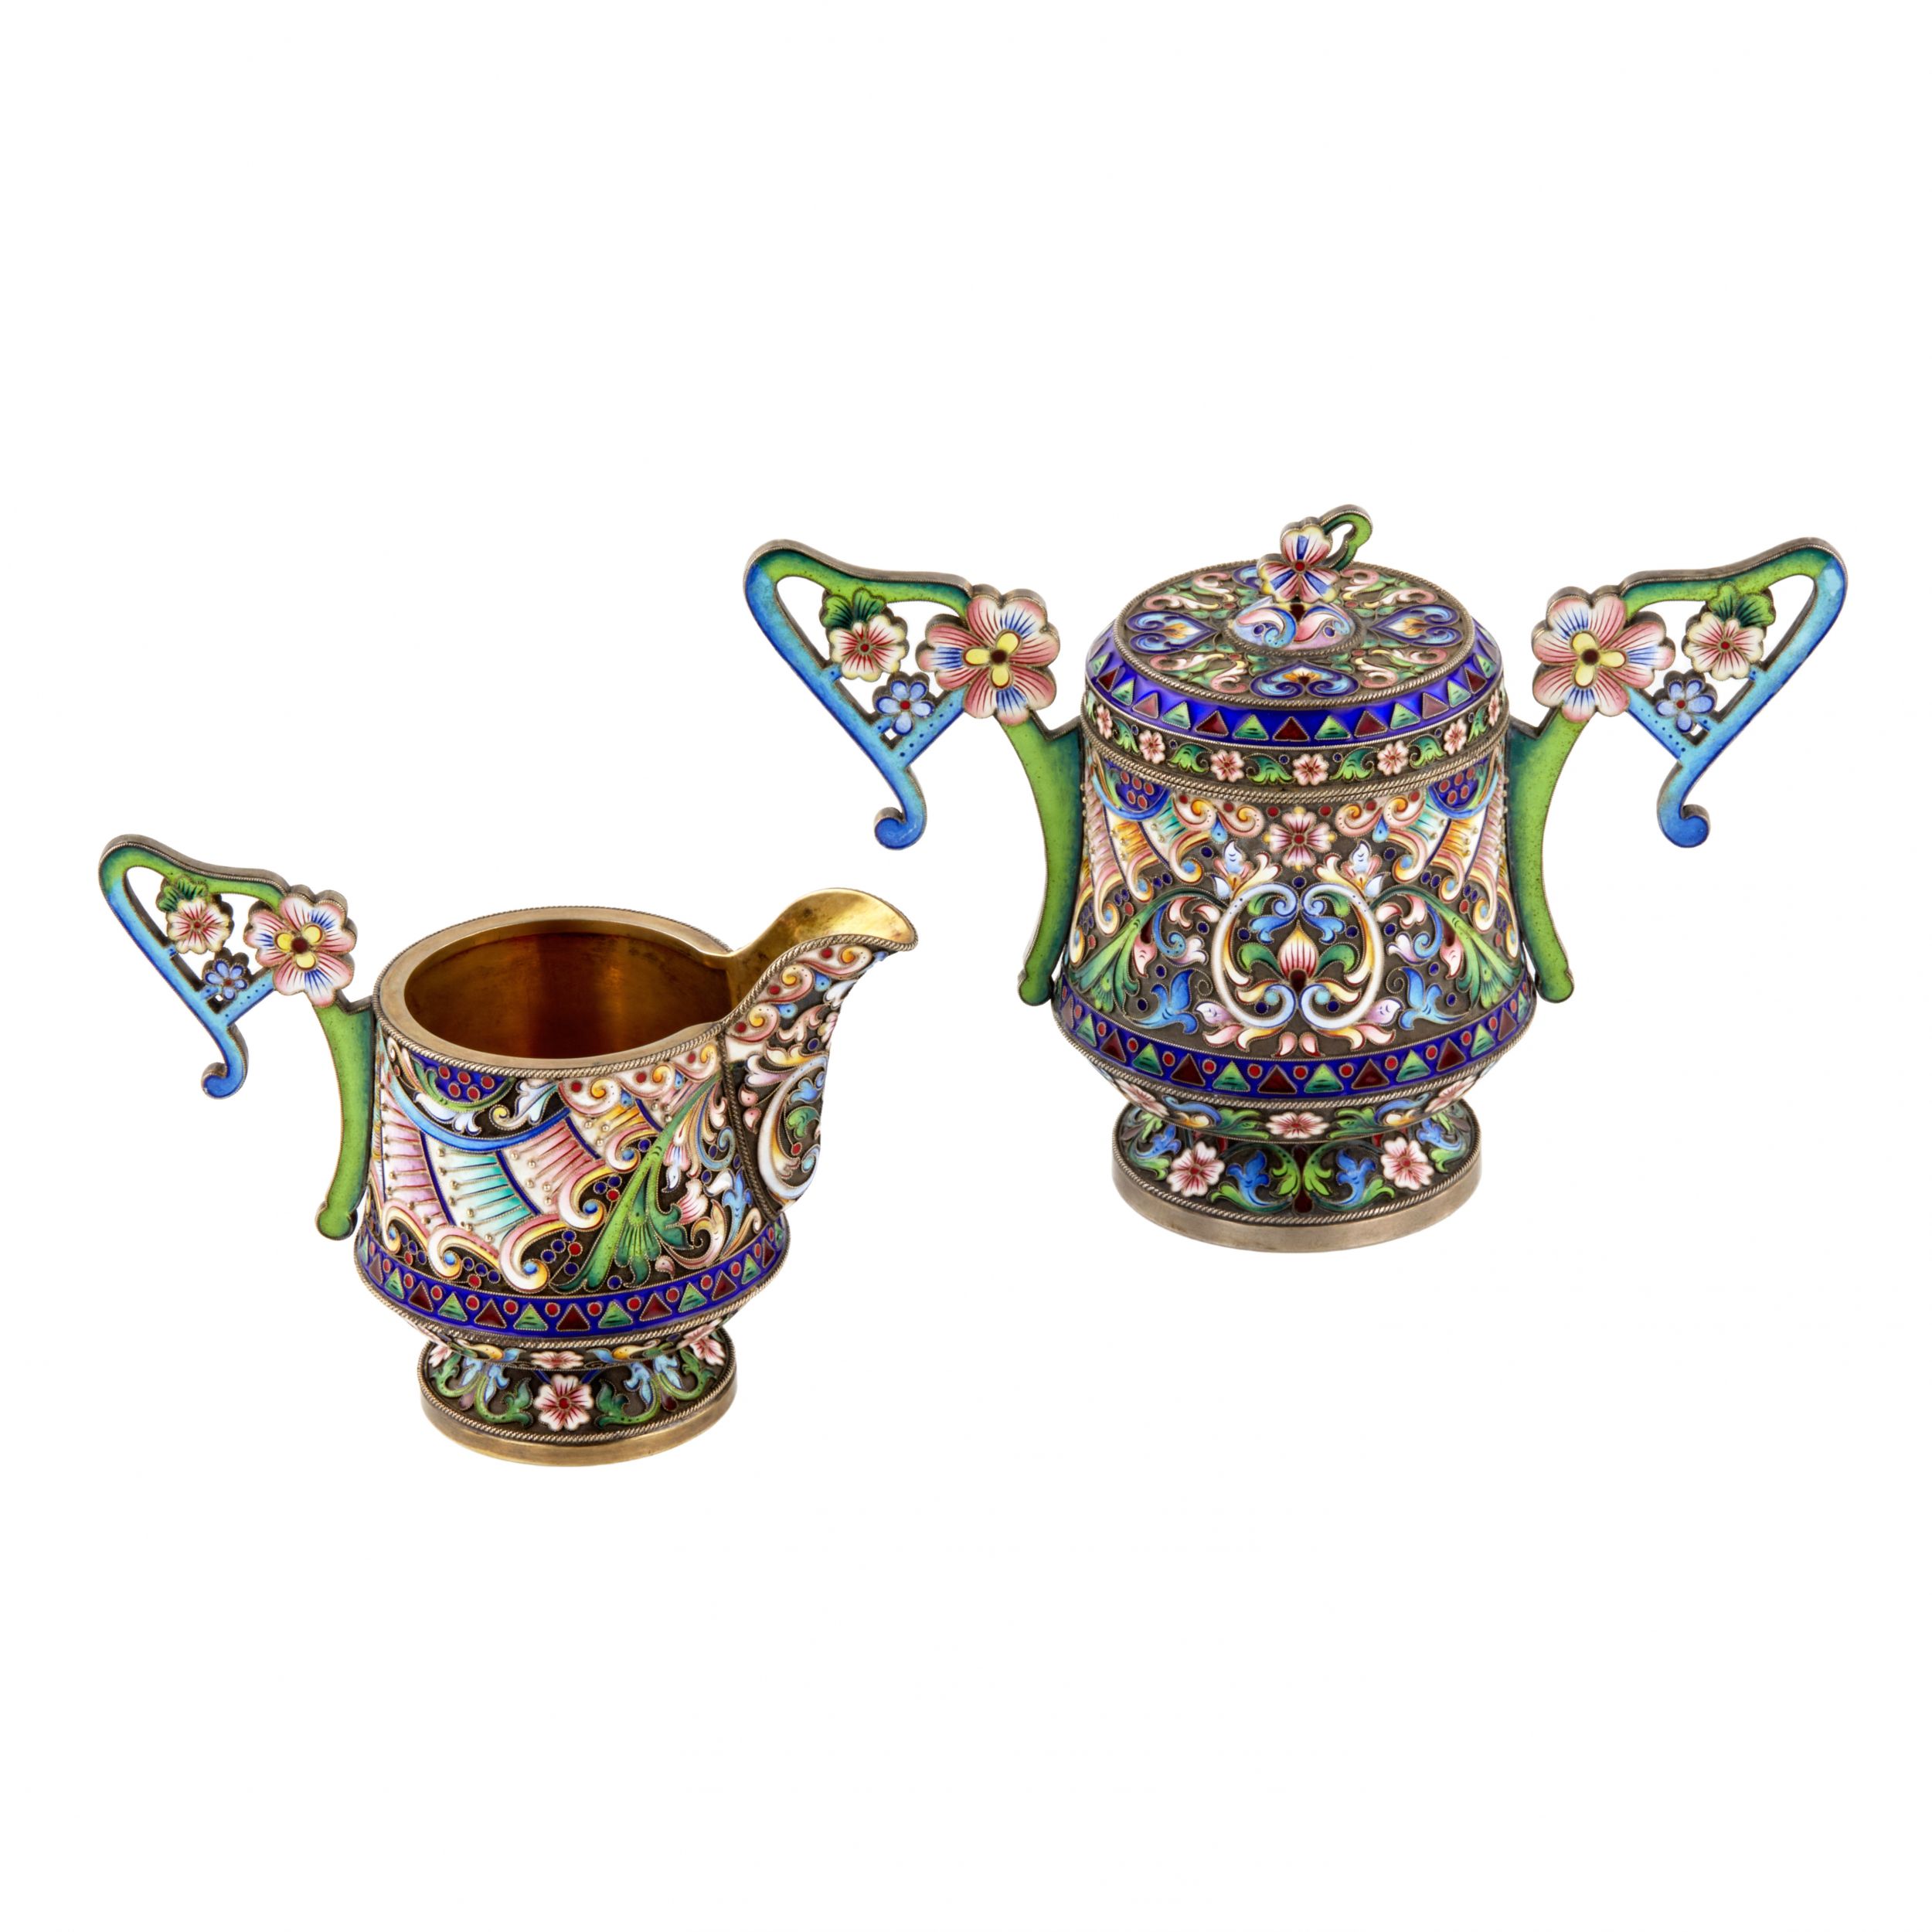 Art-Nouveau-cloisonné-enamel-Russian-silver-creamer-and-sugar-bowl-